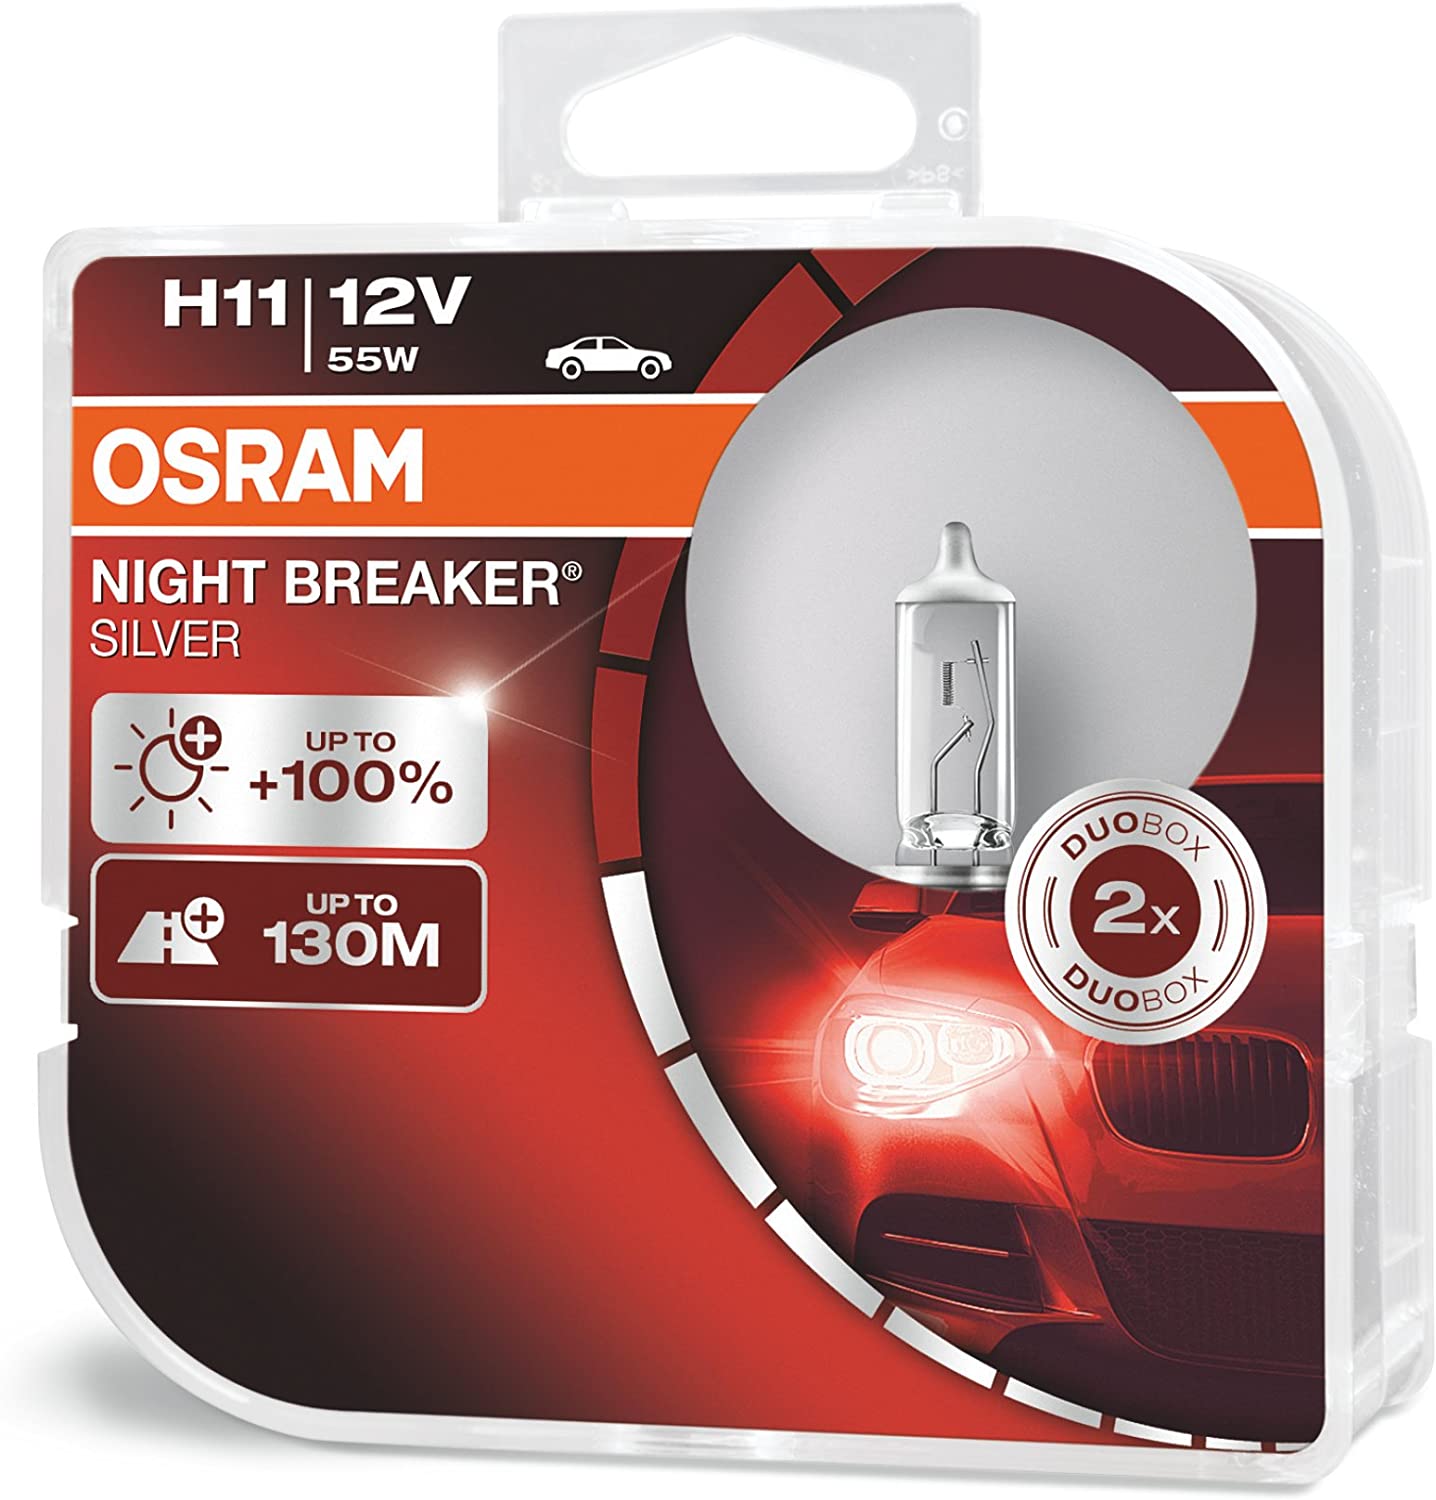 PACK LAMPADAS OSRAM NIGHT BREAKER SILVER H11 12V